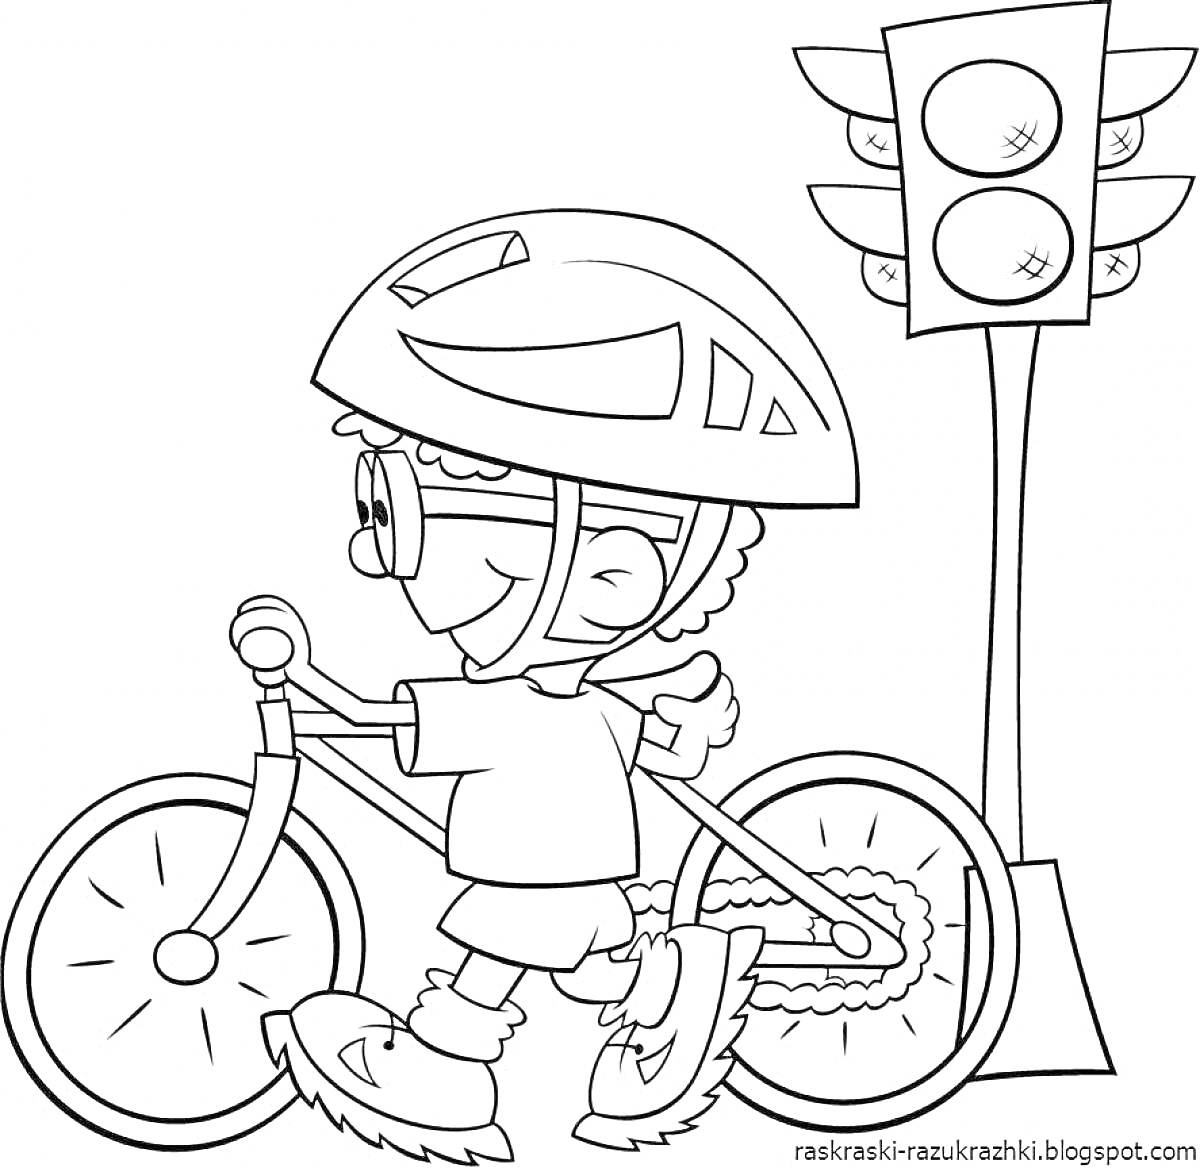 Раскраска Мальчик на велосипеде с шлемом и светофором